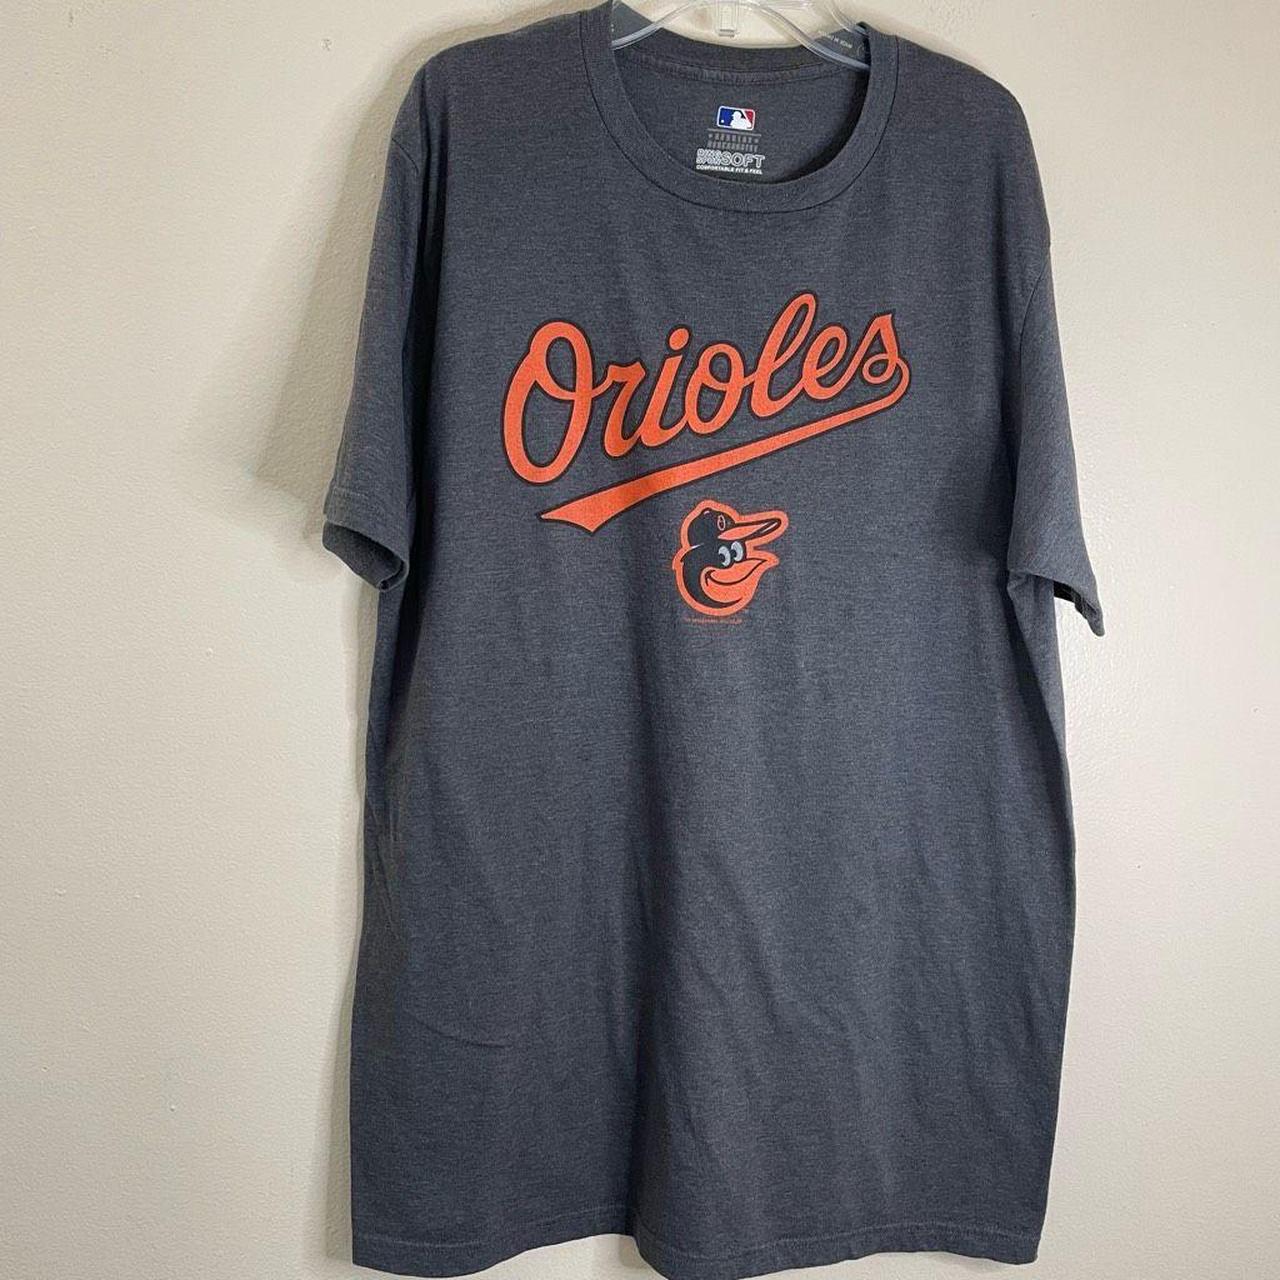 Vintage Orioles merchandise